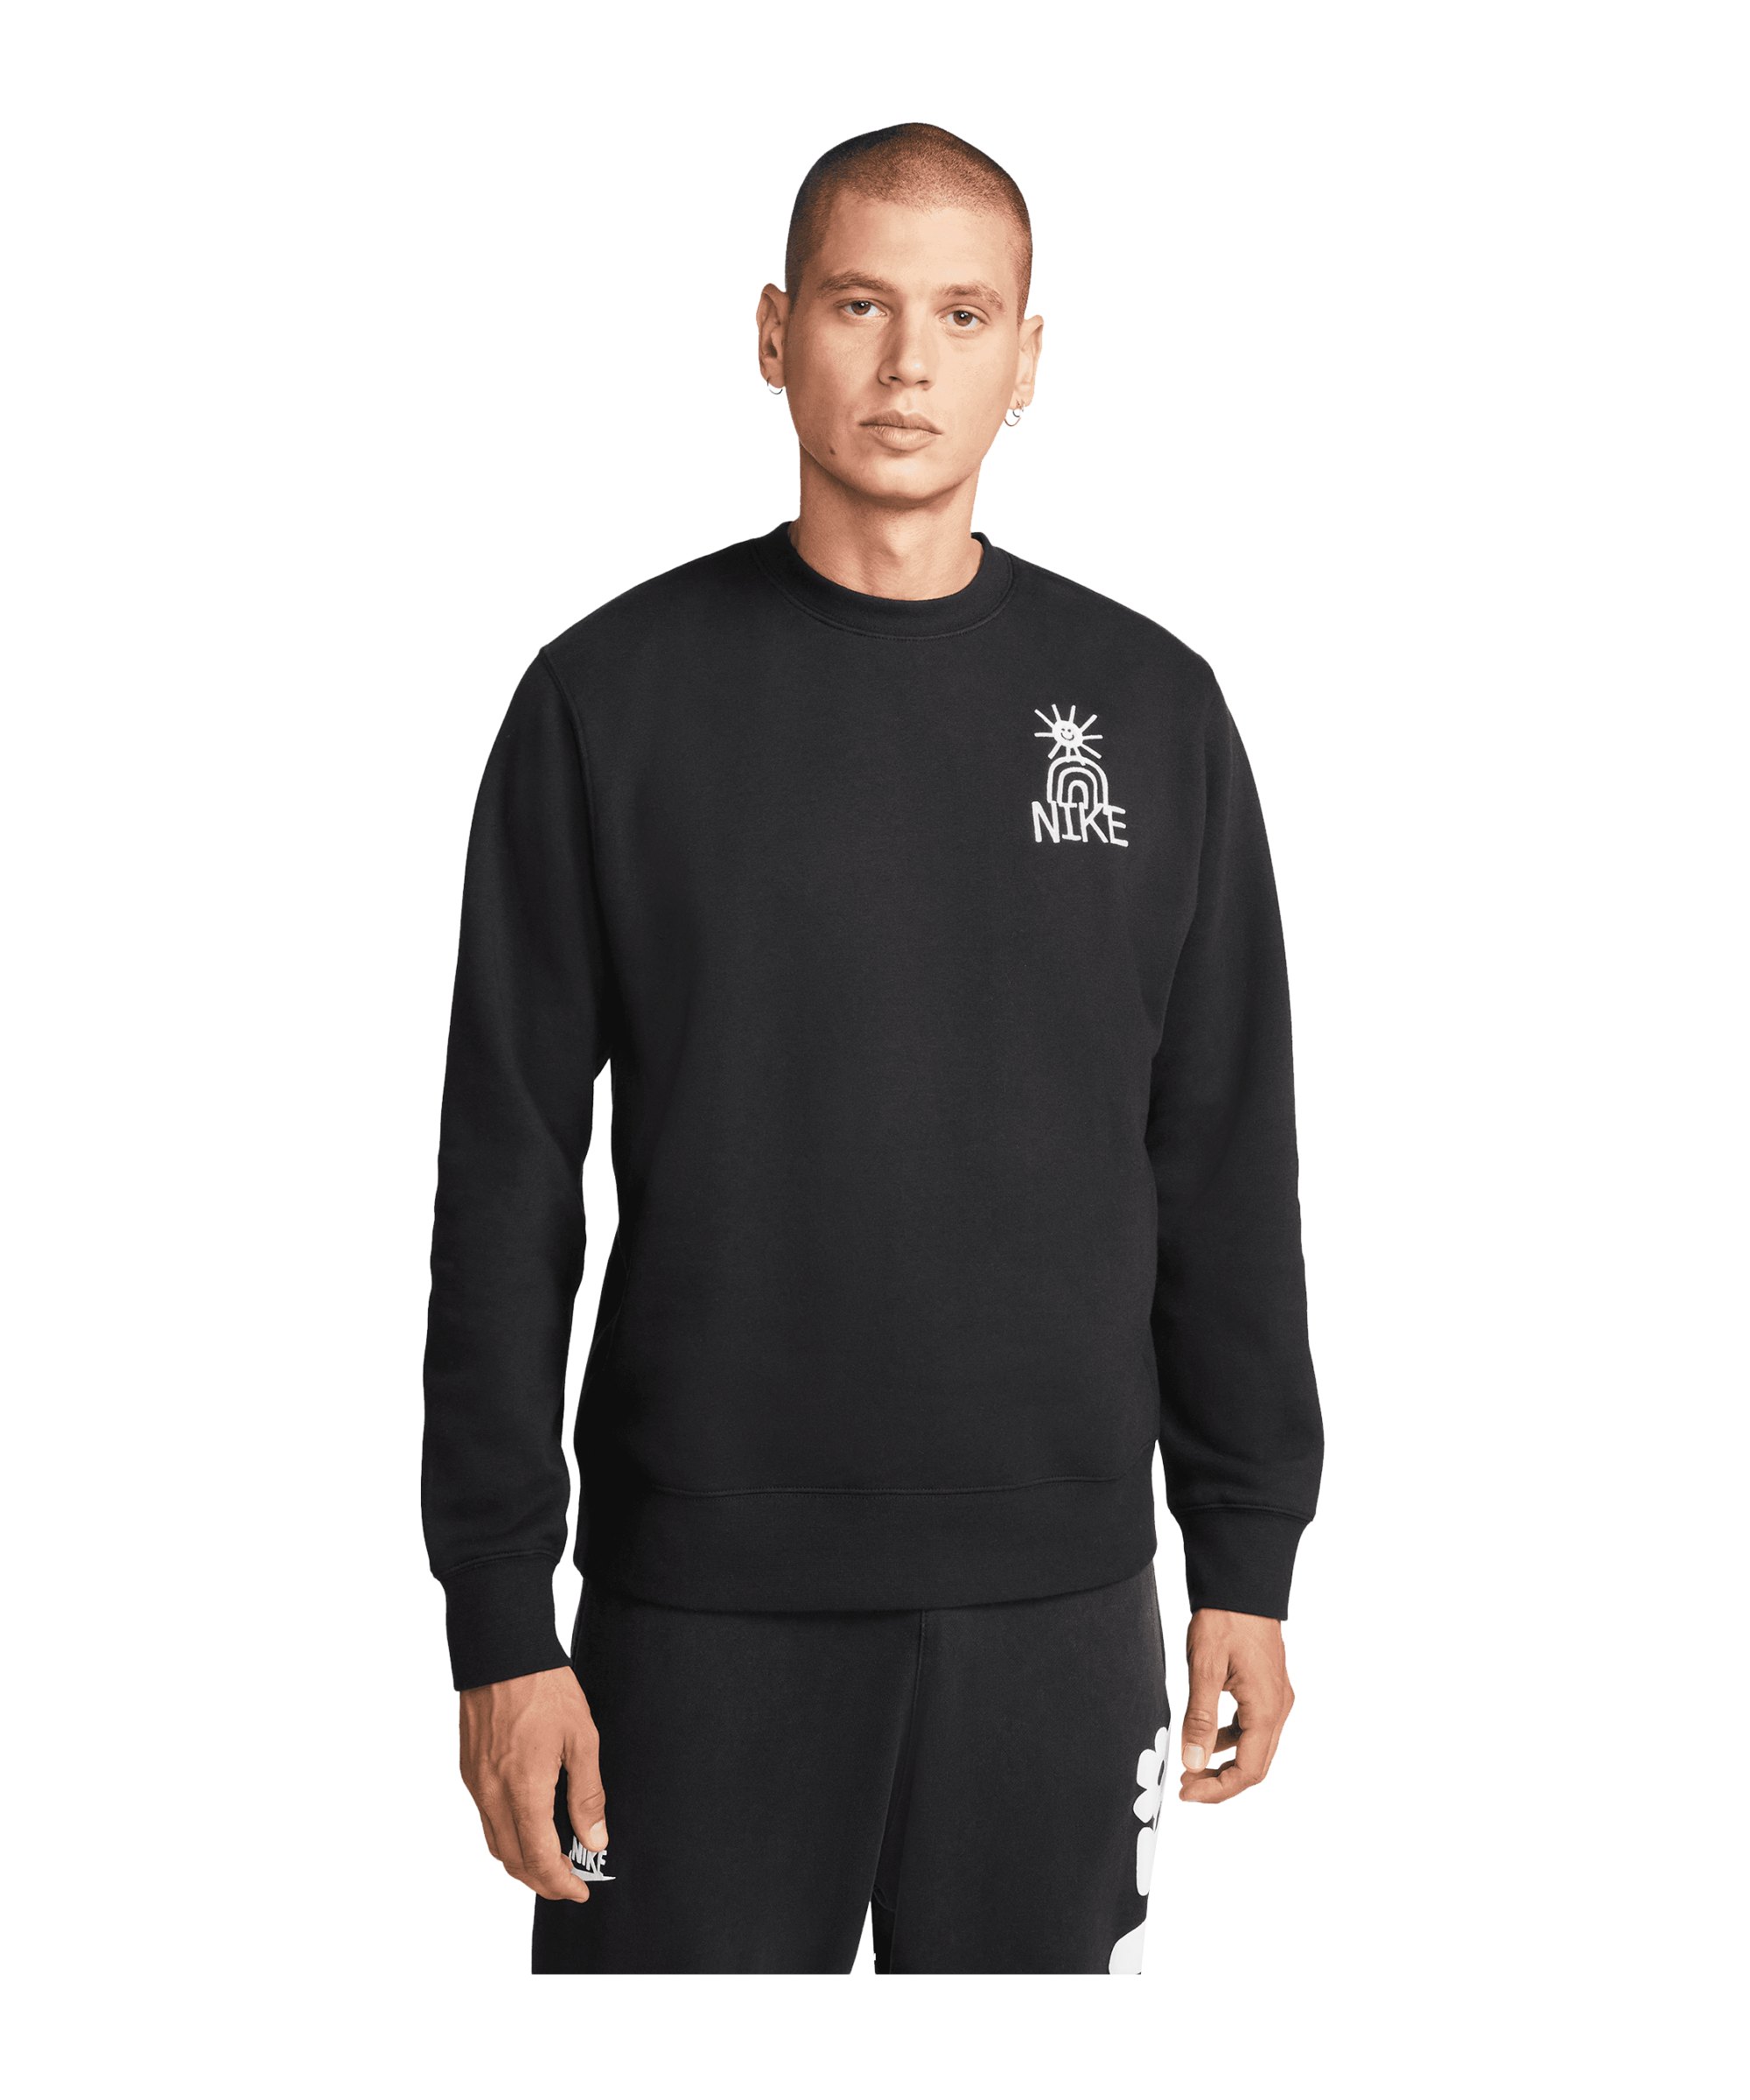 Nike Fleece Crew Sweatshirt F010 - schwarz